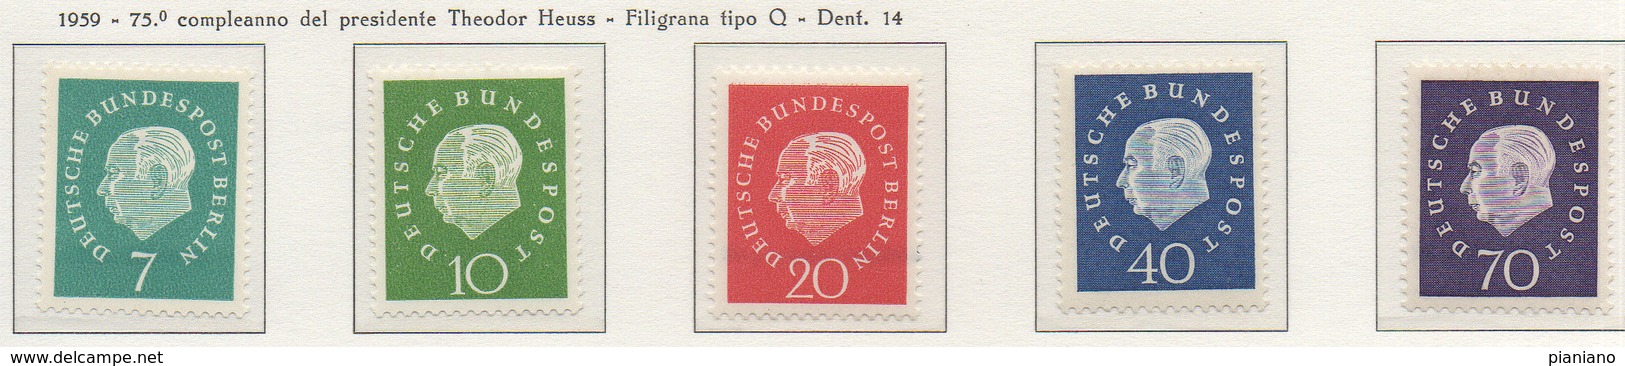 PIA - GERMANIA - 1959 - 75° Anniversario Del Presidente Theodor Heuss - (Yv 173-77) - Nuovi